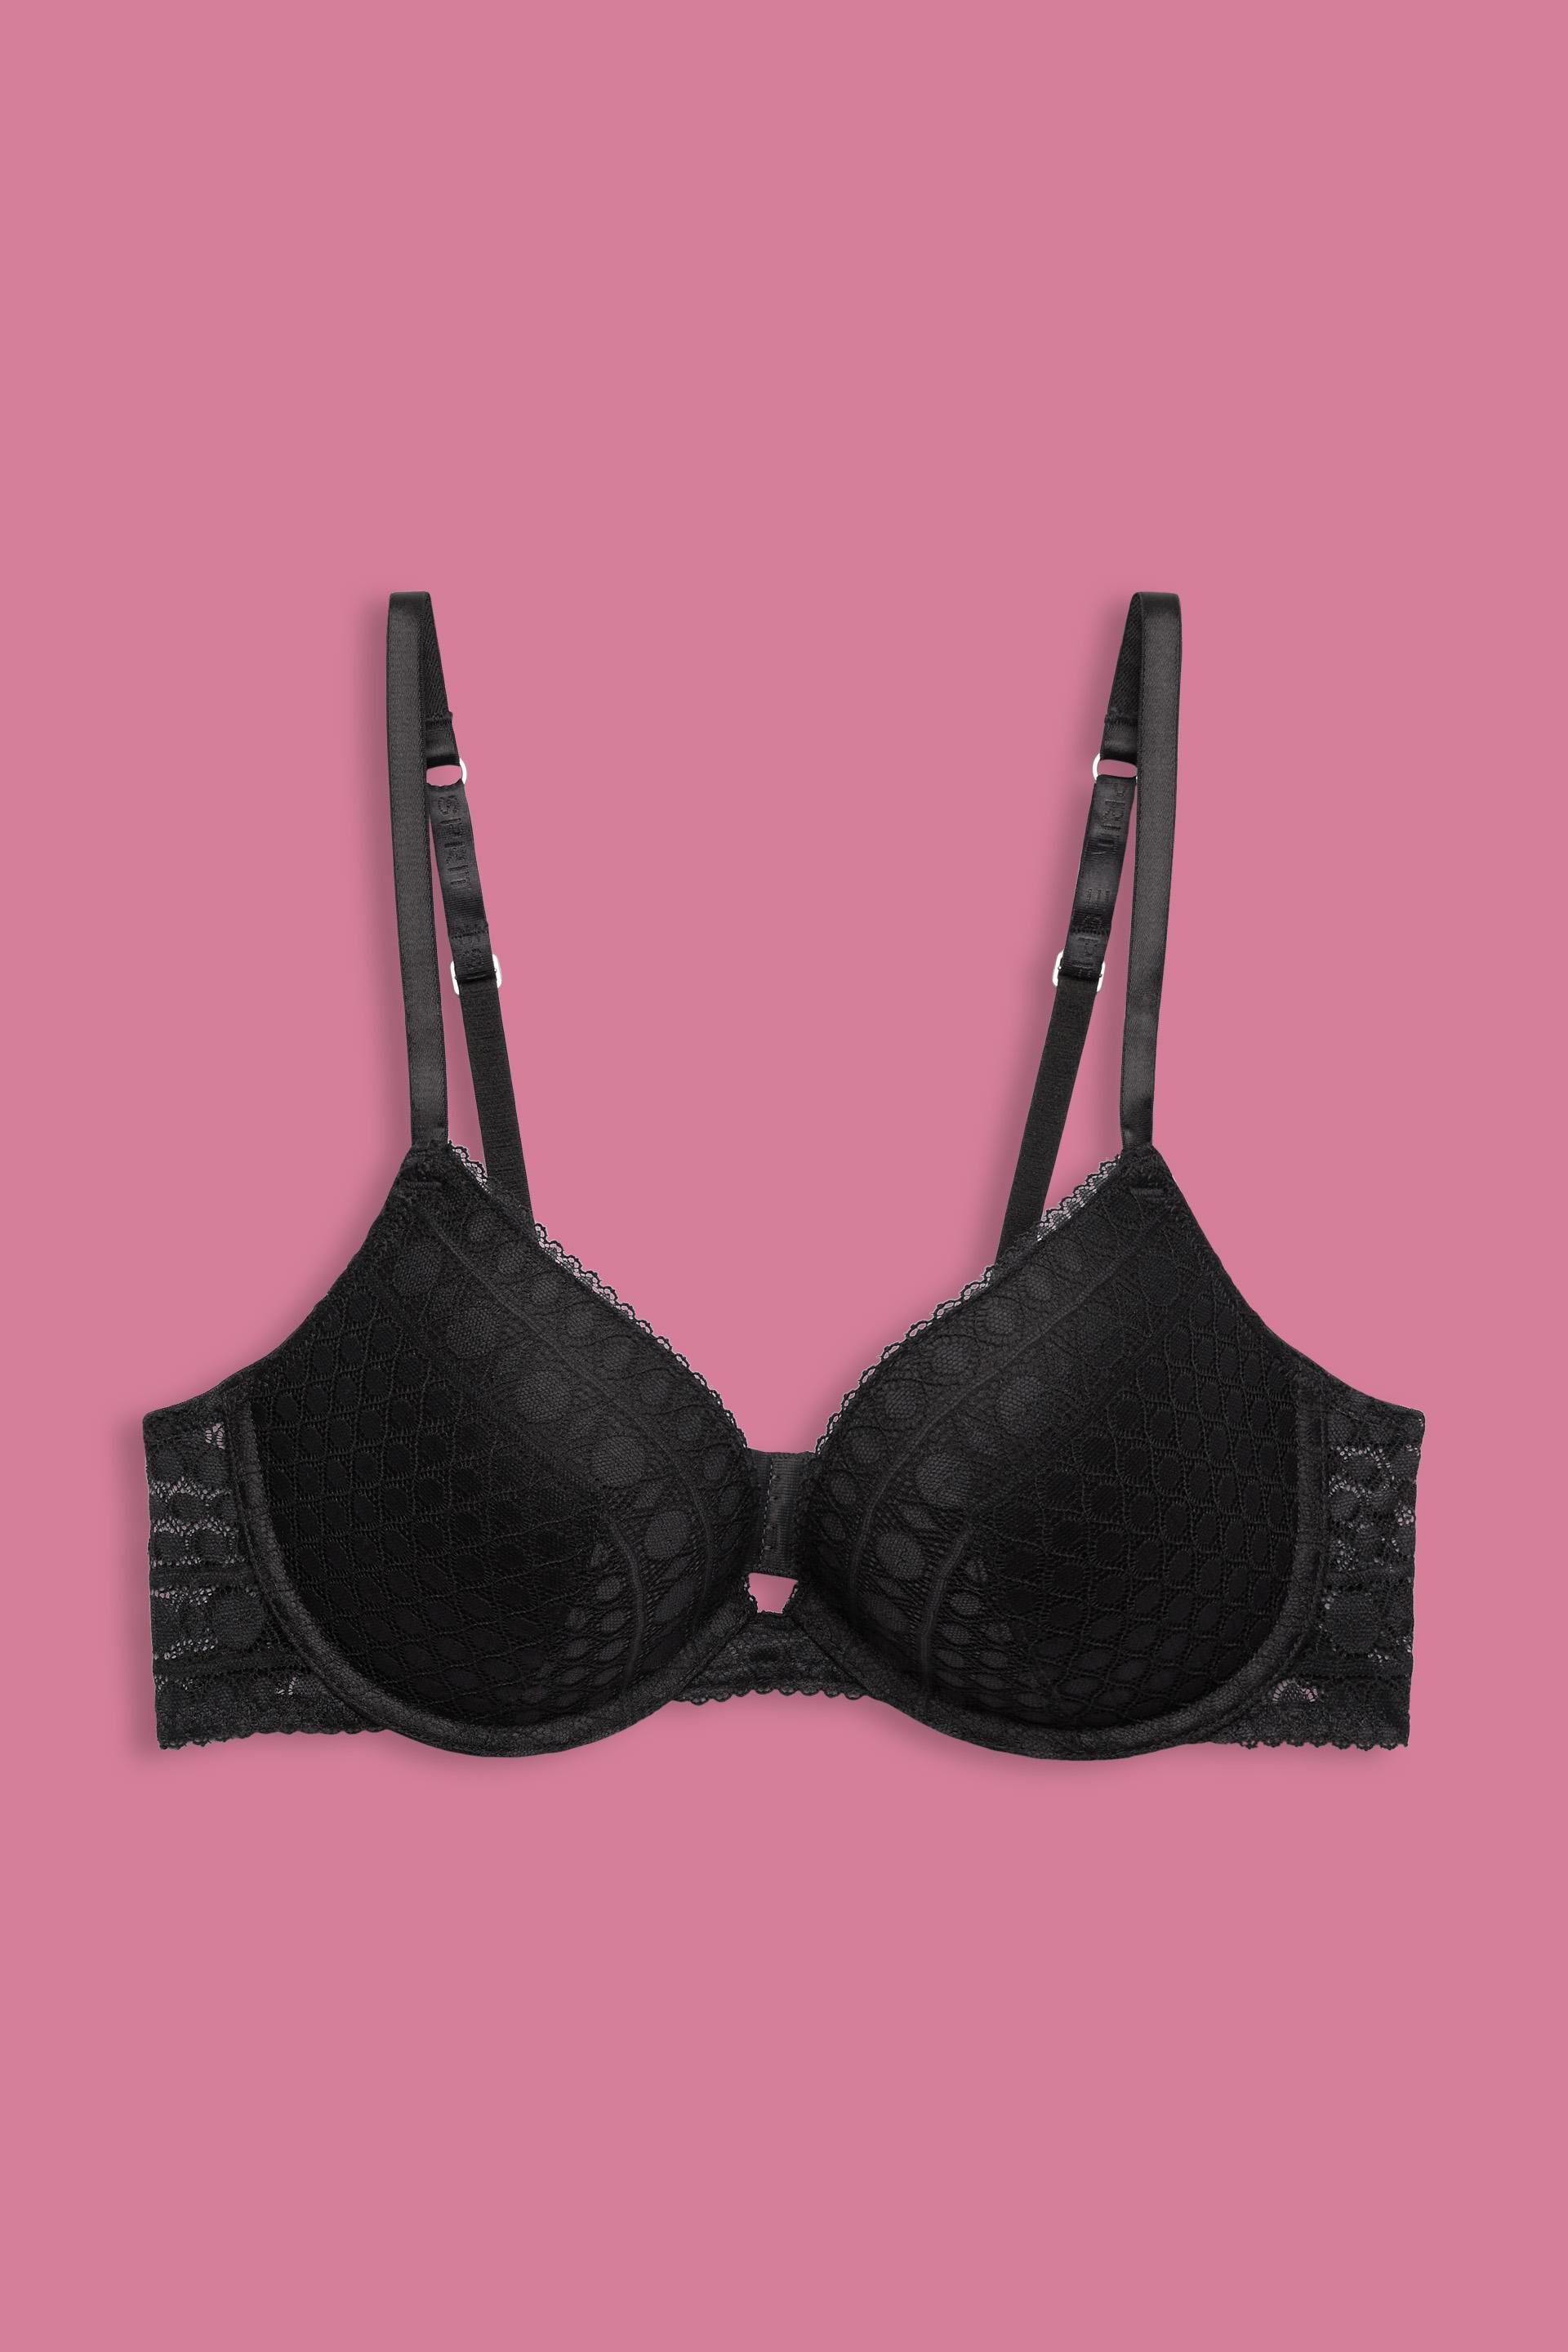 Primark fan transforms £4 bra into sexy lace bralette like Victoria's  Secret - Daily Star